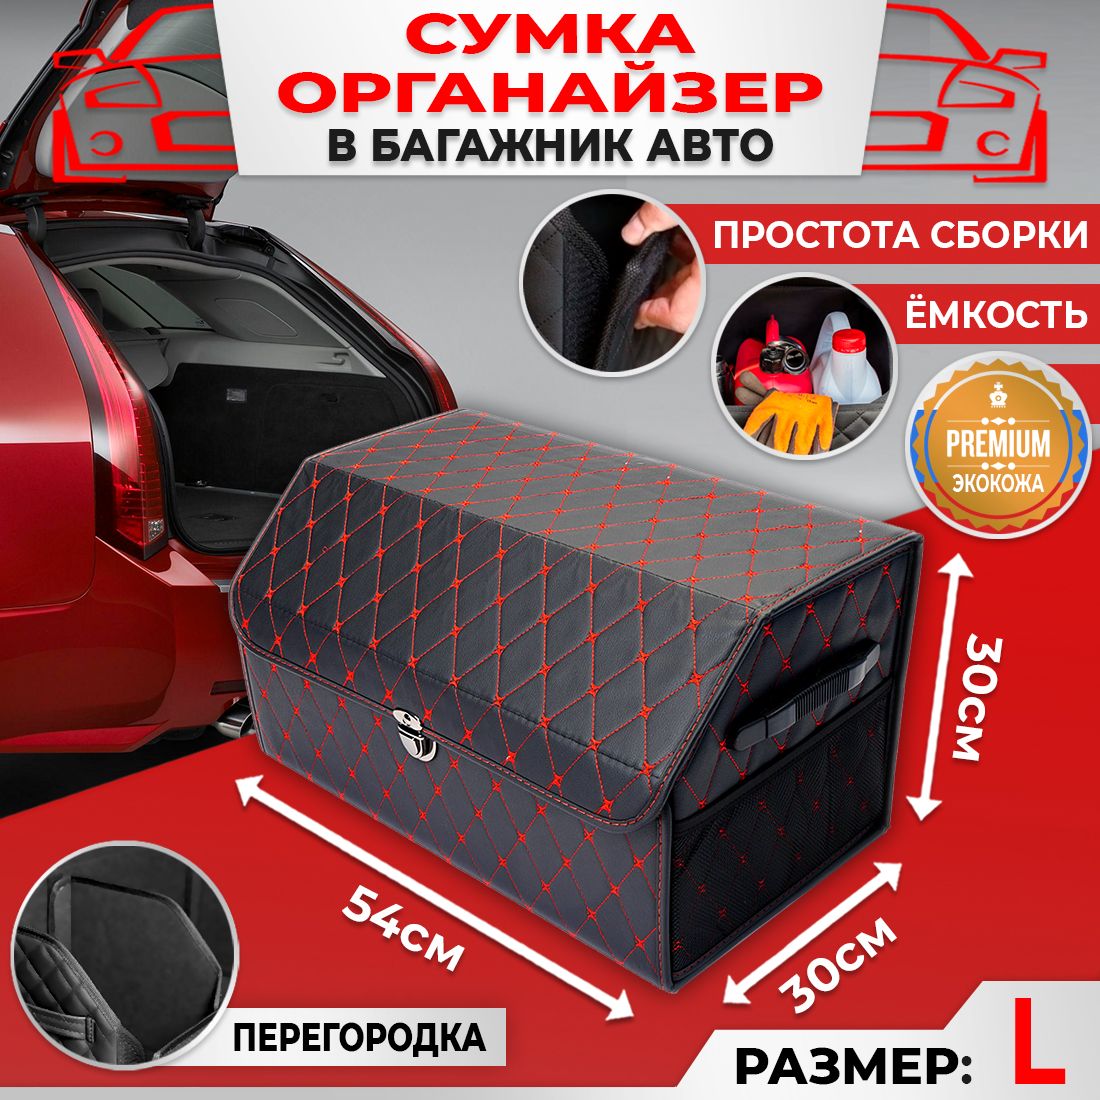 Сумка Саквояж Органайзер в багажник автомобиля размер 54х30х30см цвет черный ромб бабочка красный